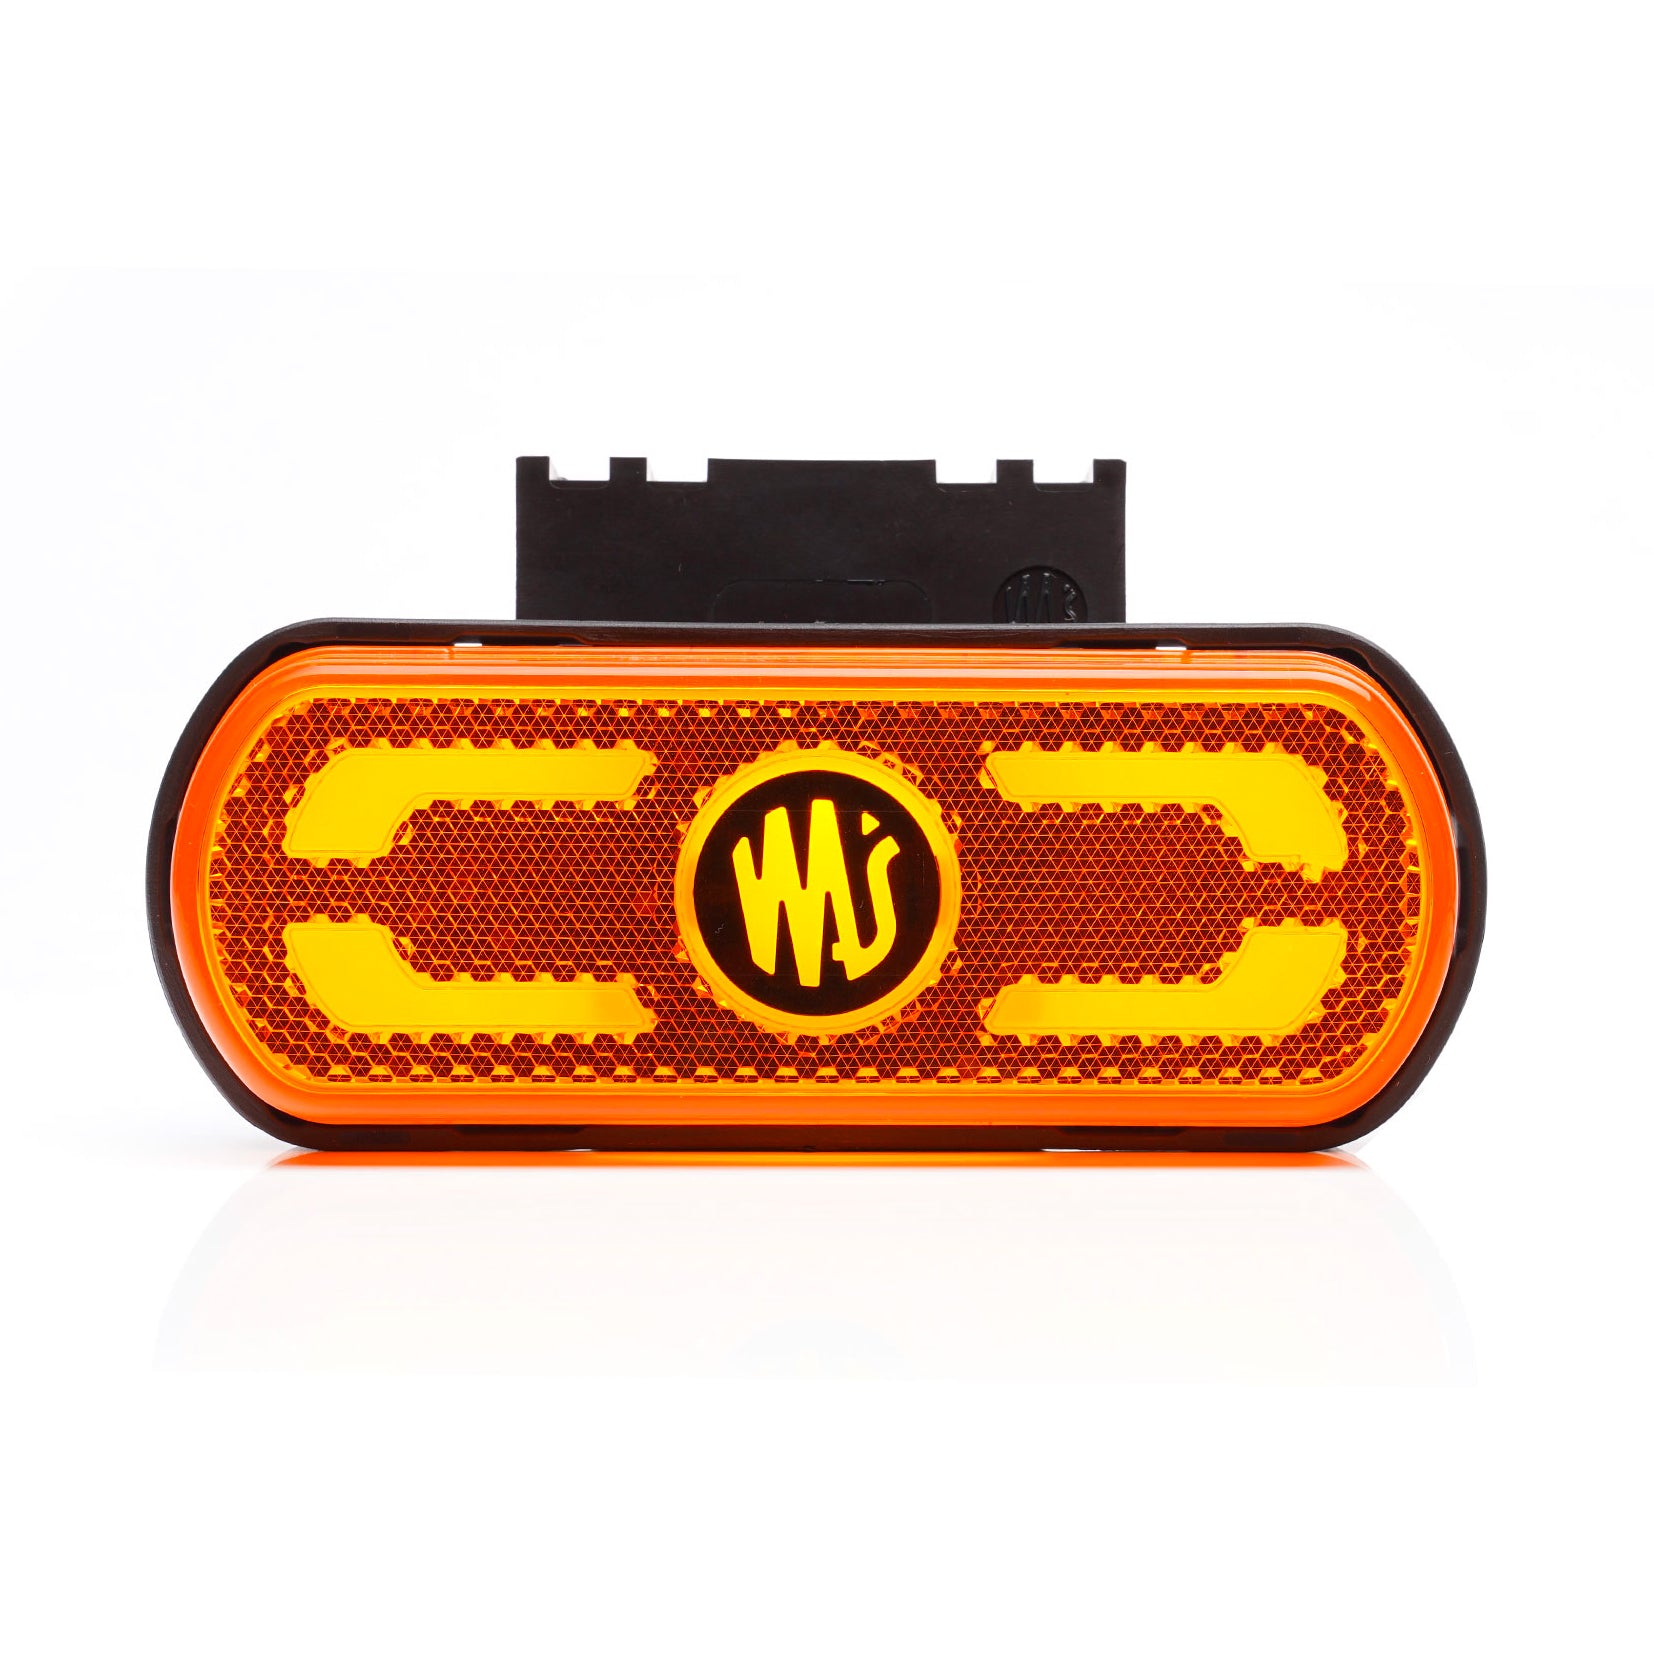 Llum marcador ambre WAS W240 amb llum de contorn del vehicle - spo-cs-disabled - spo-default - spo-enabled - spo-notify-me-di